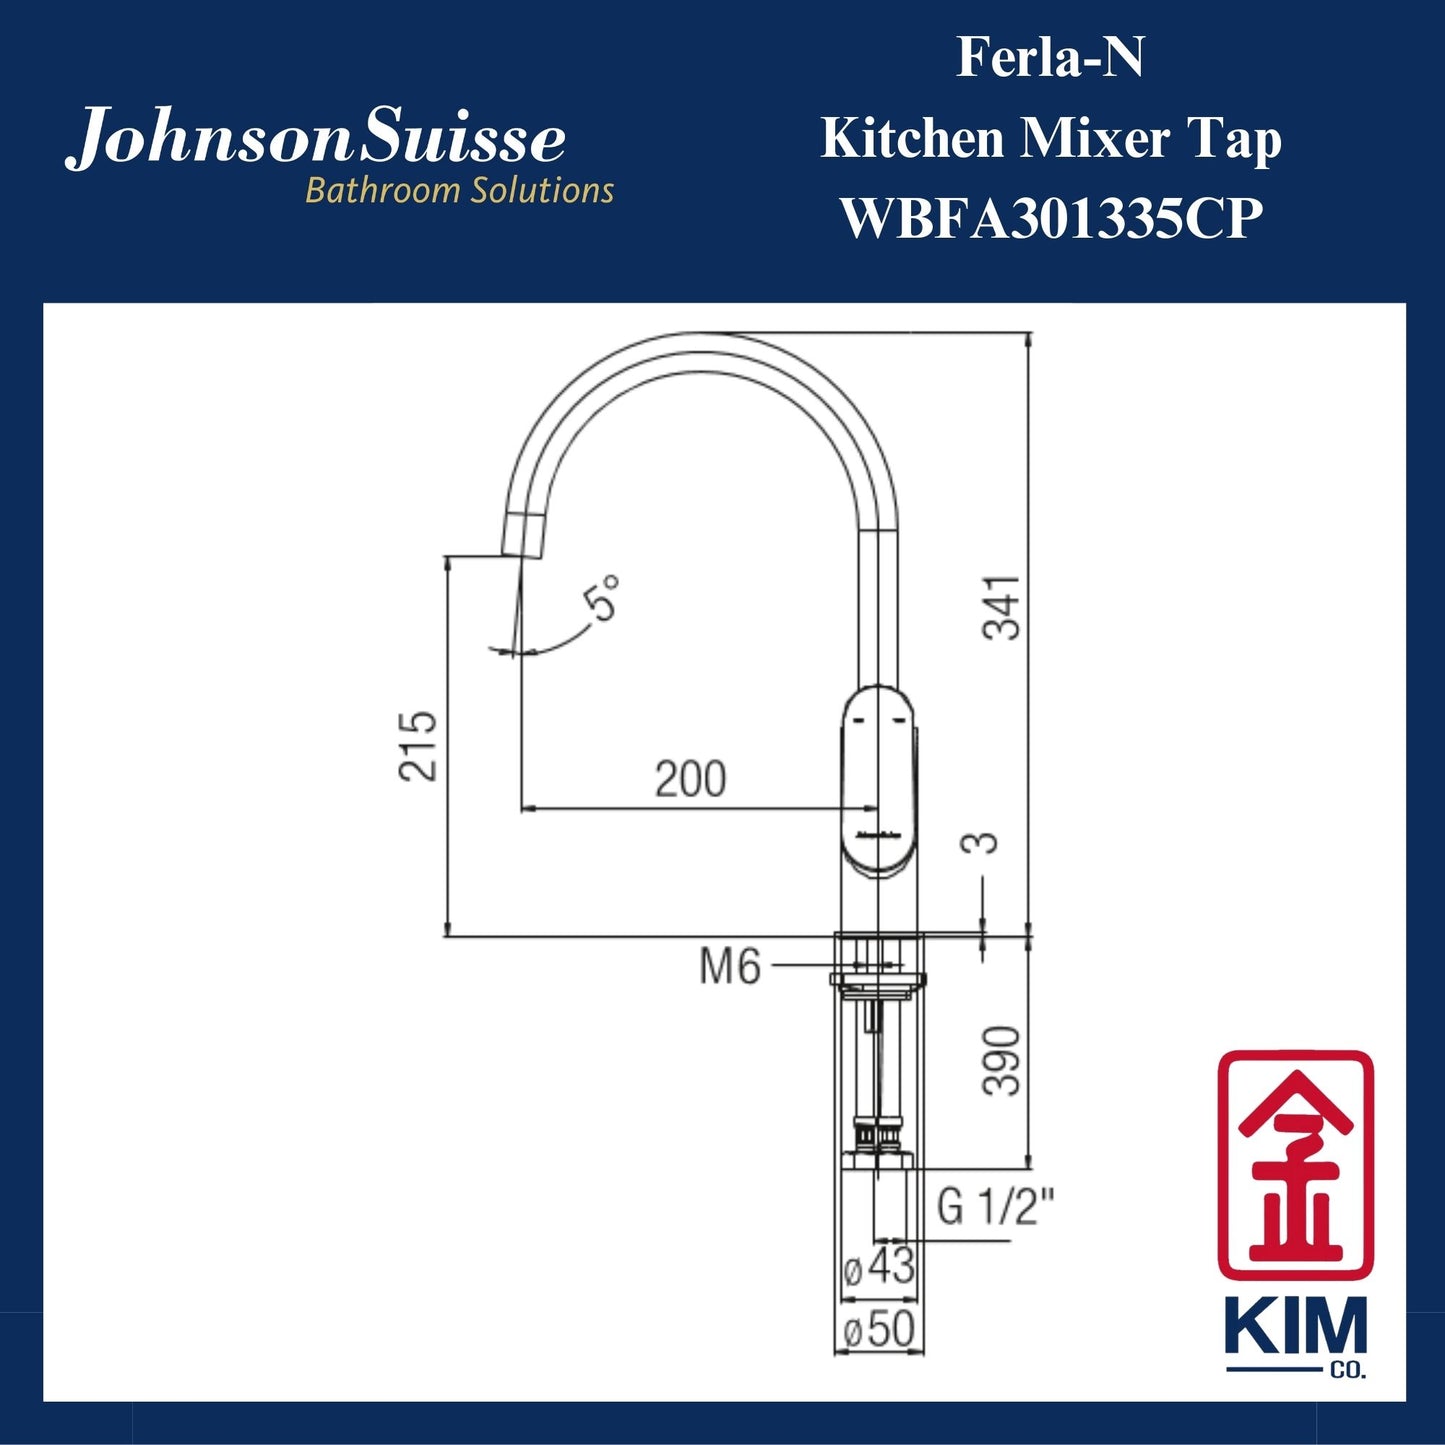 Johnson Suisse Ferla-N Deck Mounted Kitchen Sink Mixer Tap (WBFA301335CP)